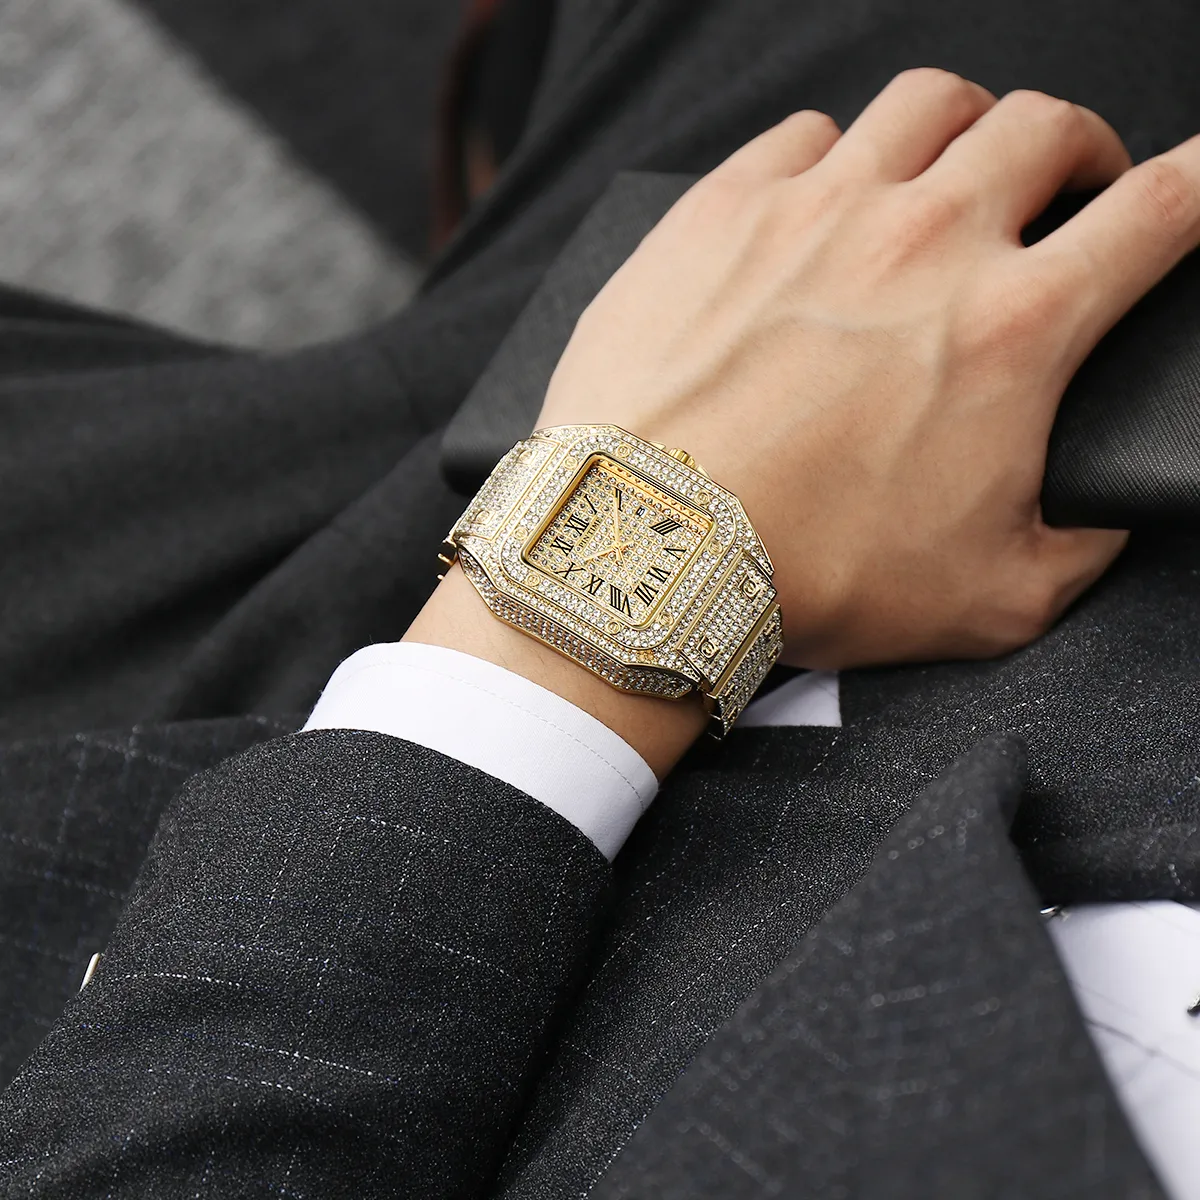 Relógios masculinos marca superior design famoso iced out relógio de ouro diamante para homem quadrado quartzo à prova dwaterproof água relógio de pulso relogio masculin241h